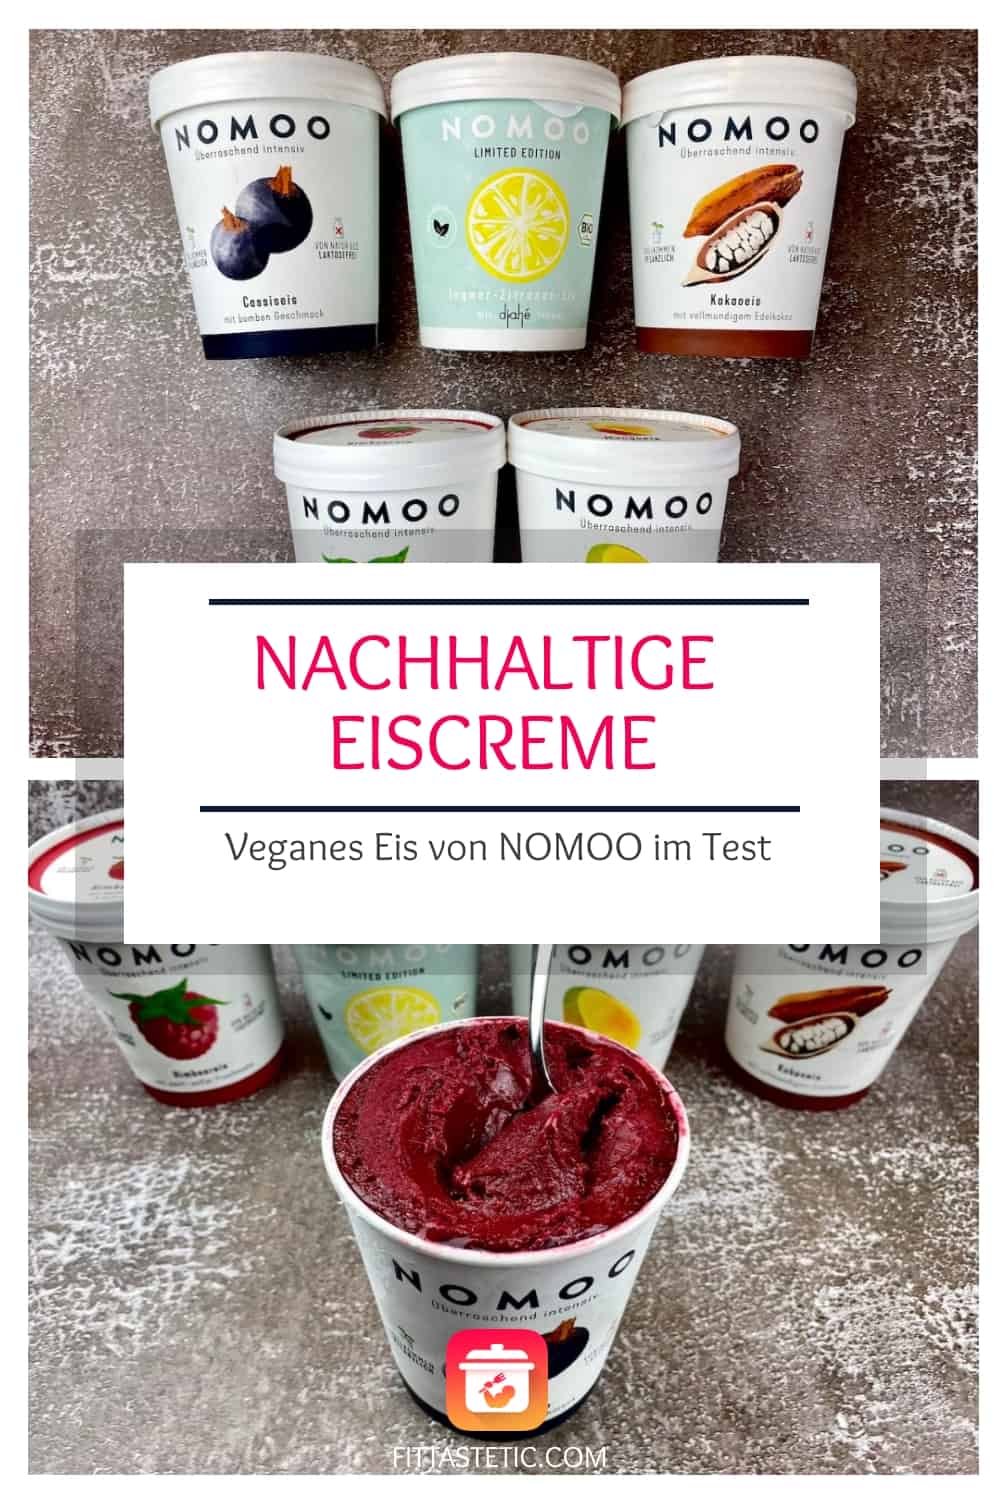 Nachhaltige Eiscreme - Veganes Eis von NOMOO im Test